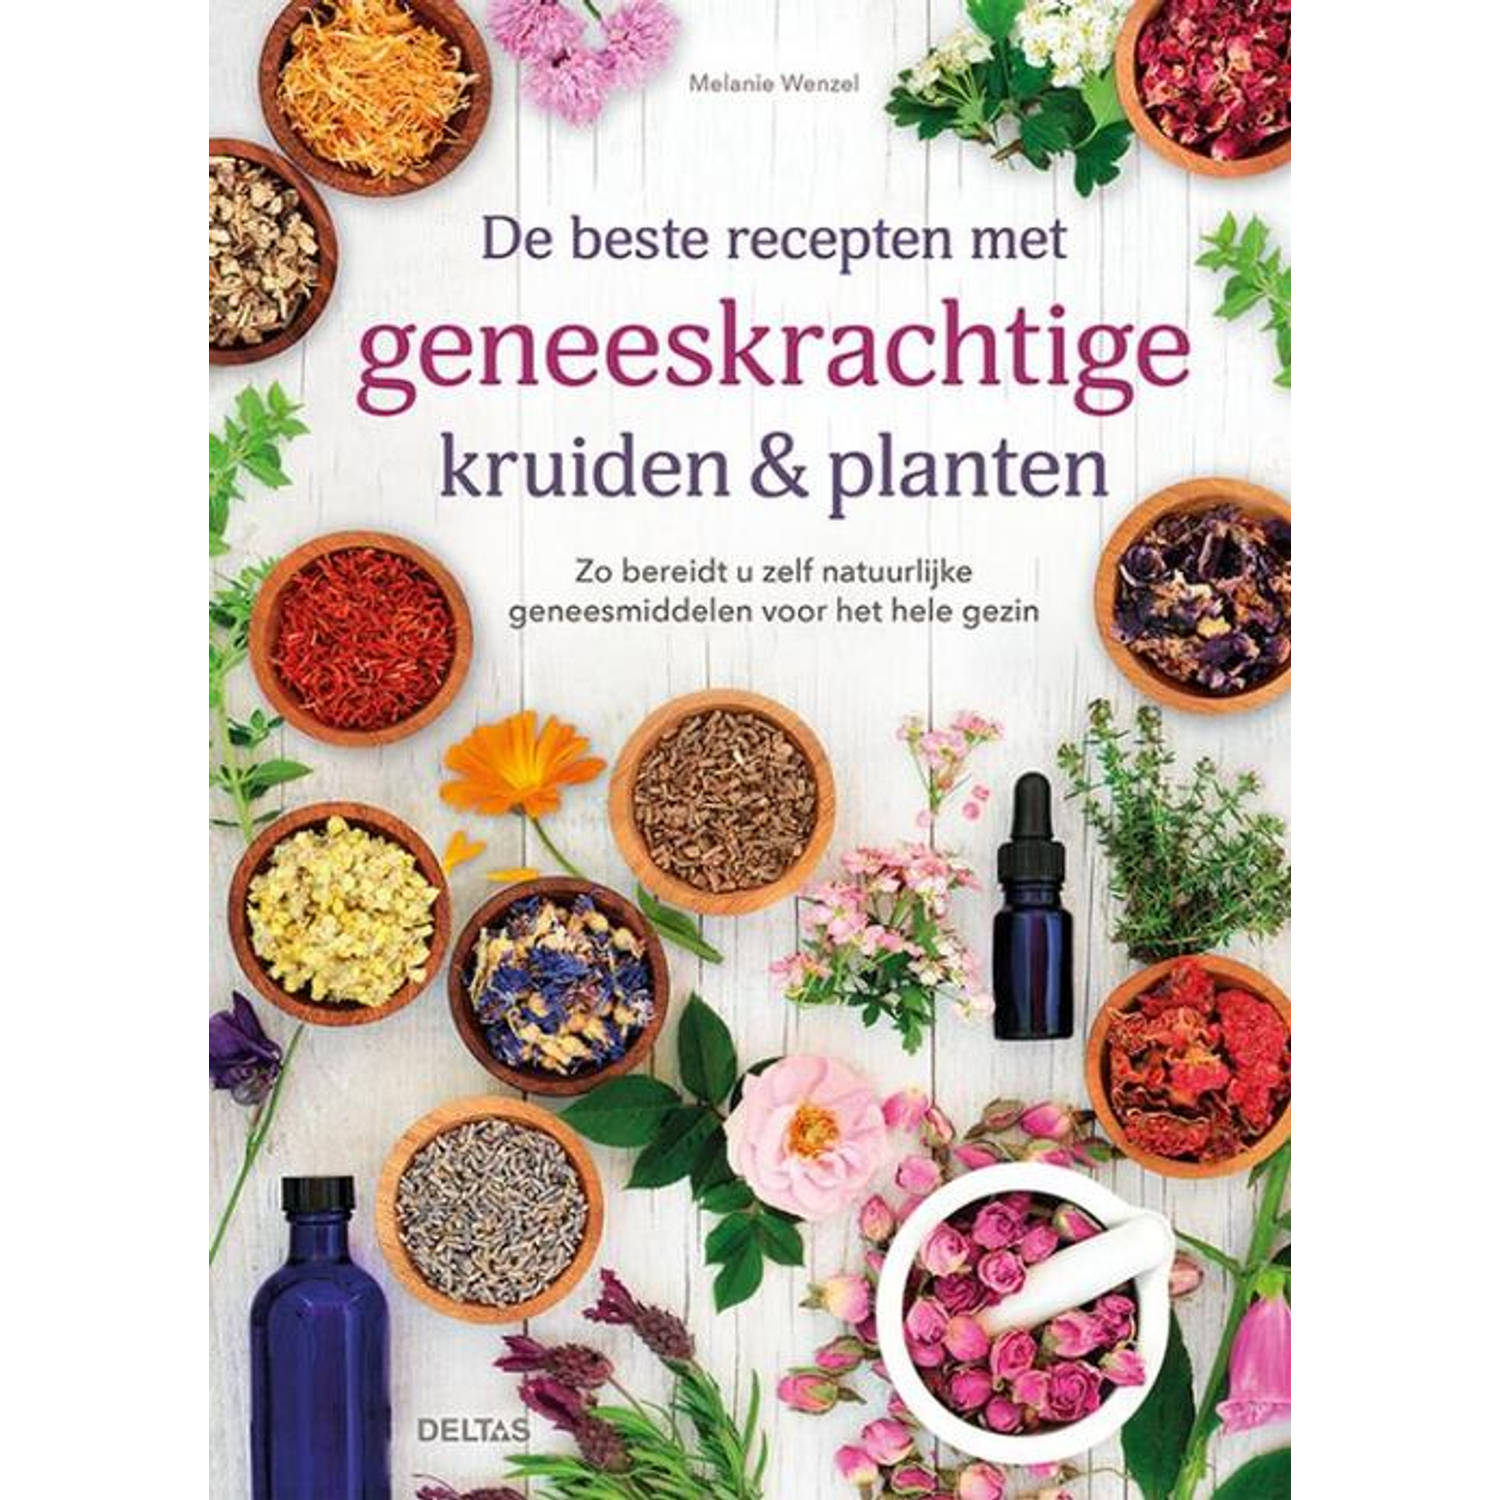 De beste recepten met geneeskrachtige kruiden & planten - (ISBN:9789044759808)